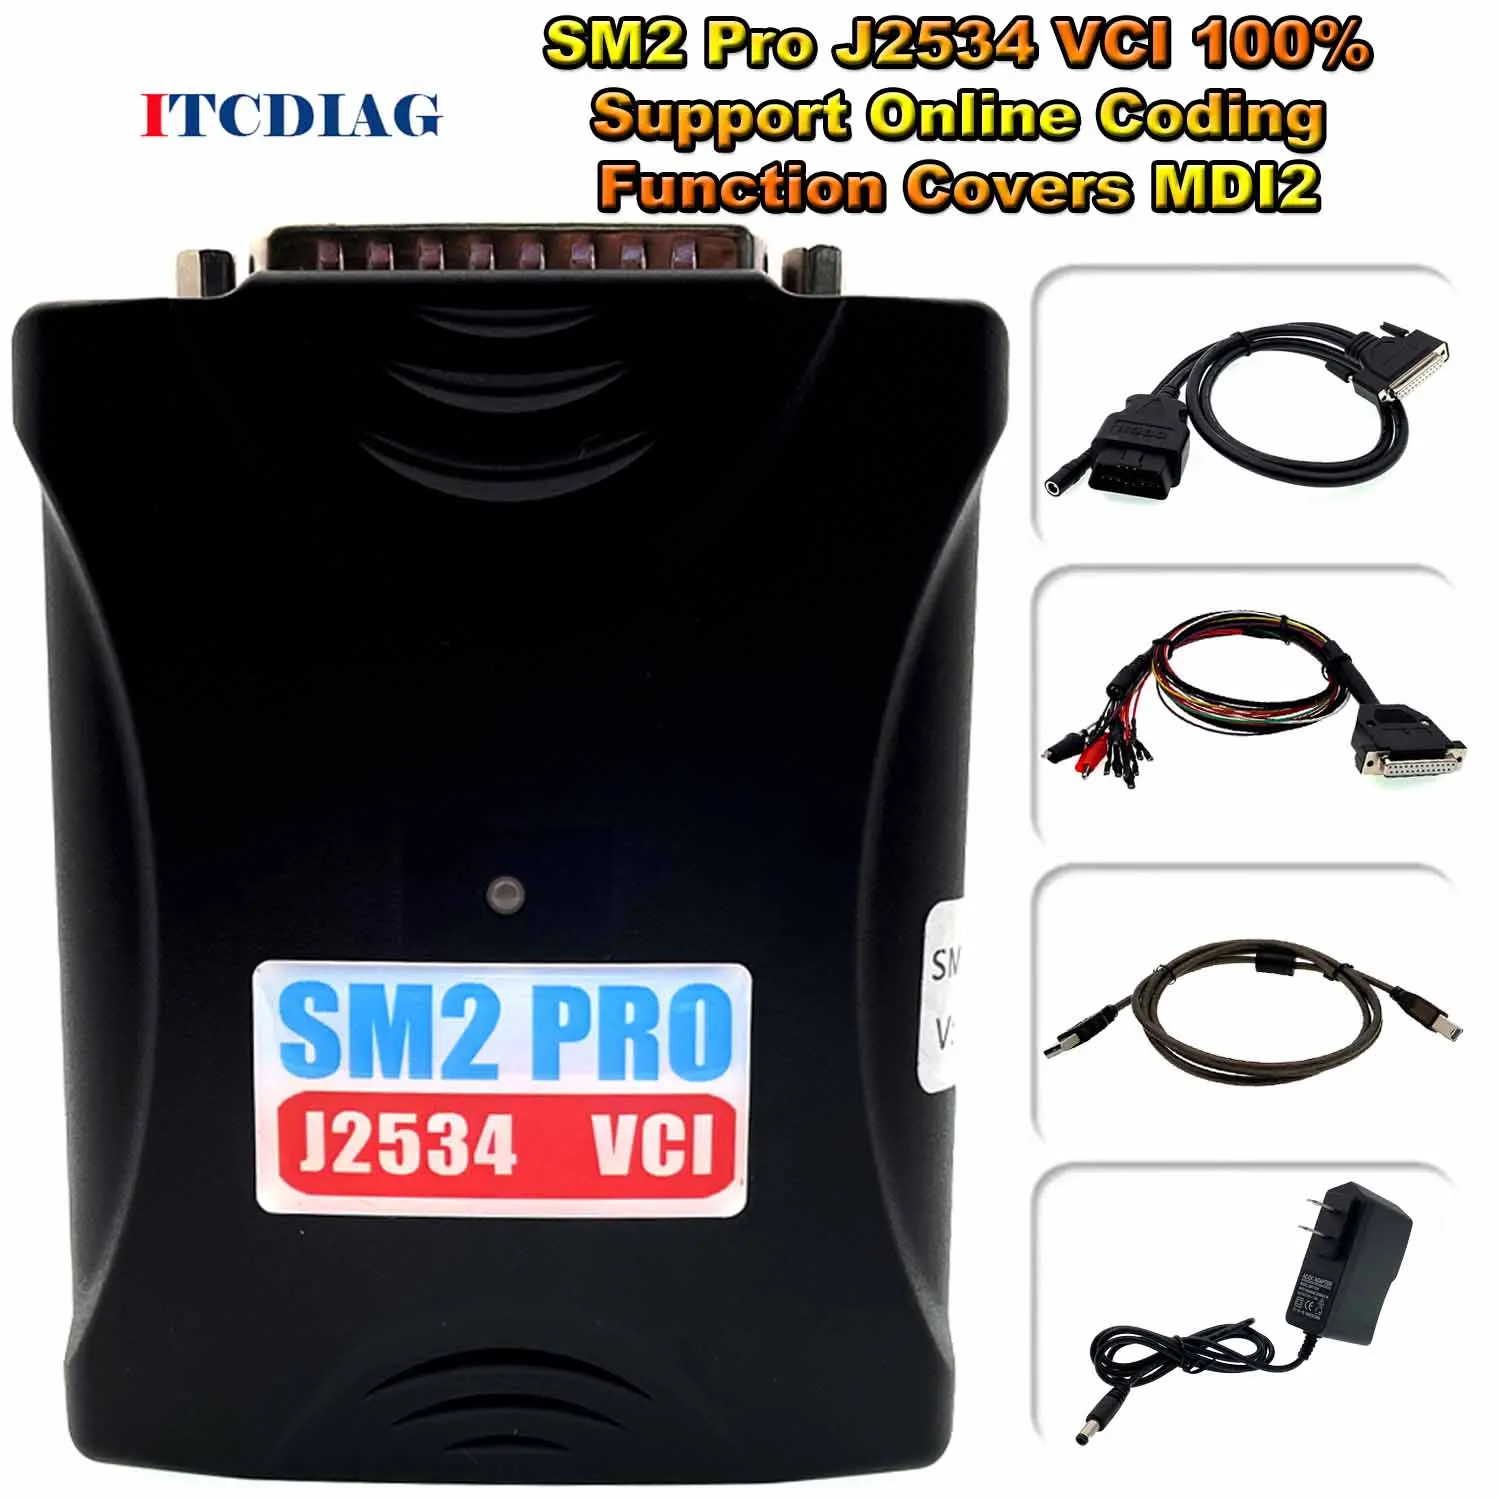 SM2 Pro J2534 VCI Идеална Поддръжка Функции на онлайн кодиране Cover MDI2 MDI 2 MDI II + HDD Множество Диагностичен скенер GDS2 Tech2Win